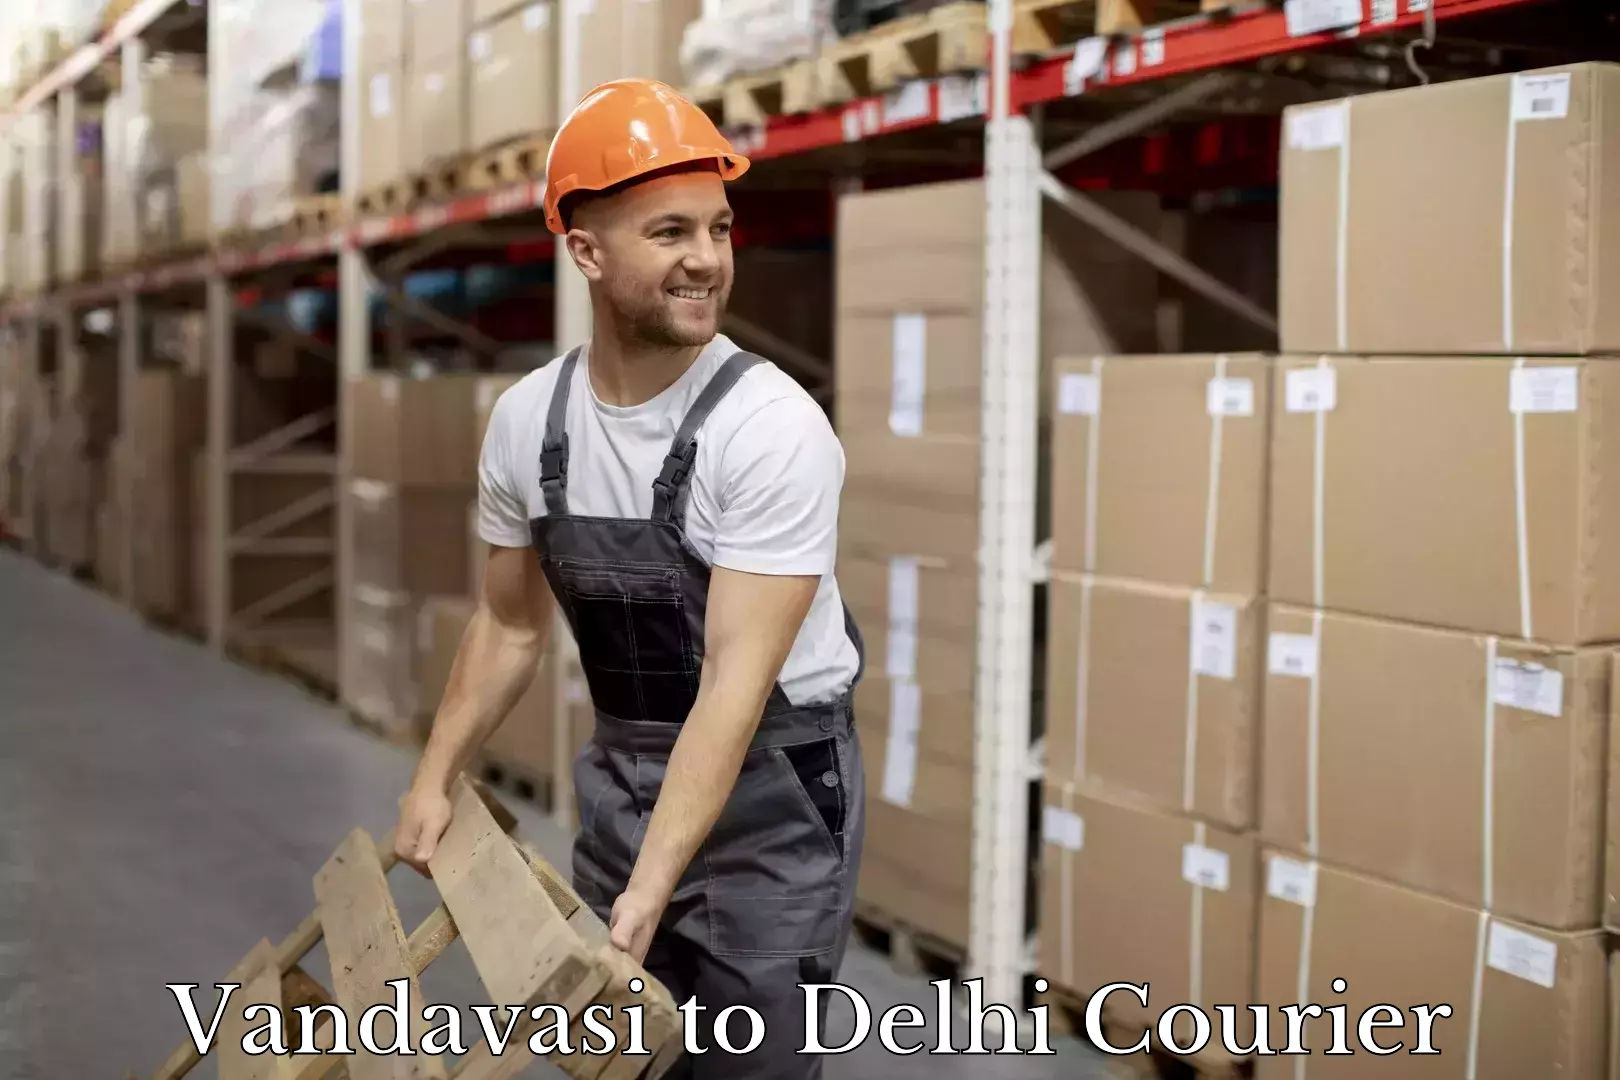 24/7 shipping services Vandavasi to Delhi